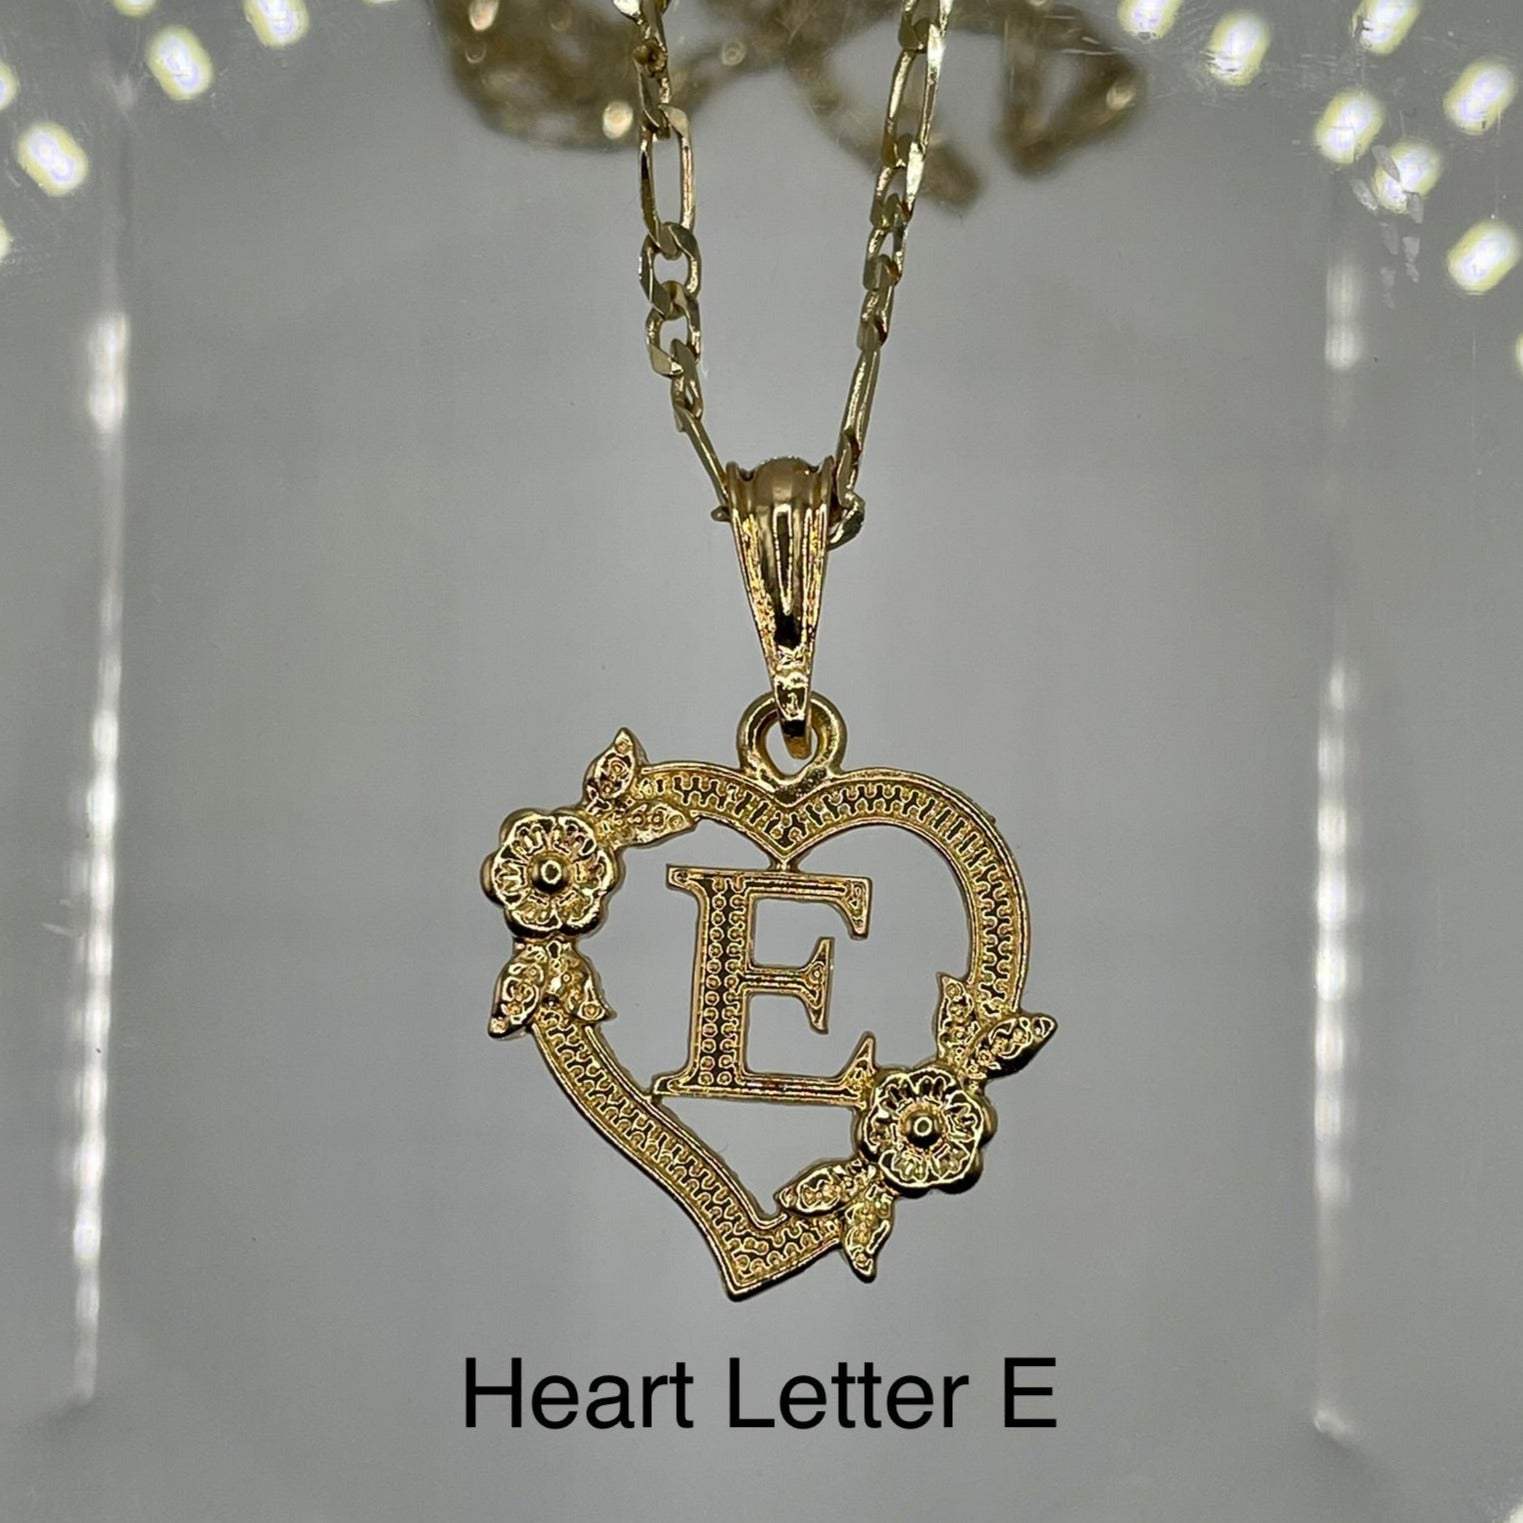 Heart letter E pendant. Gold heart pendant. Letter pendants.